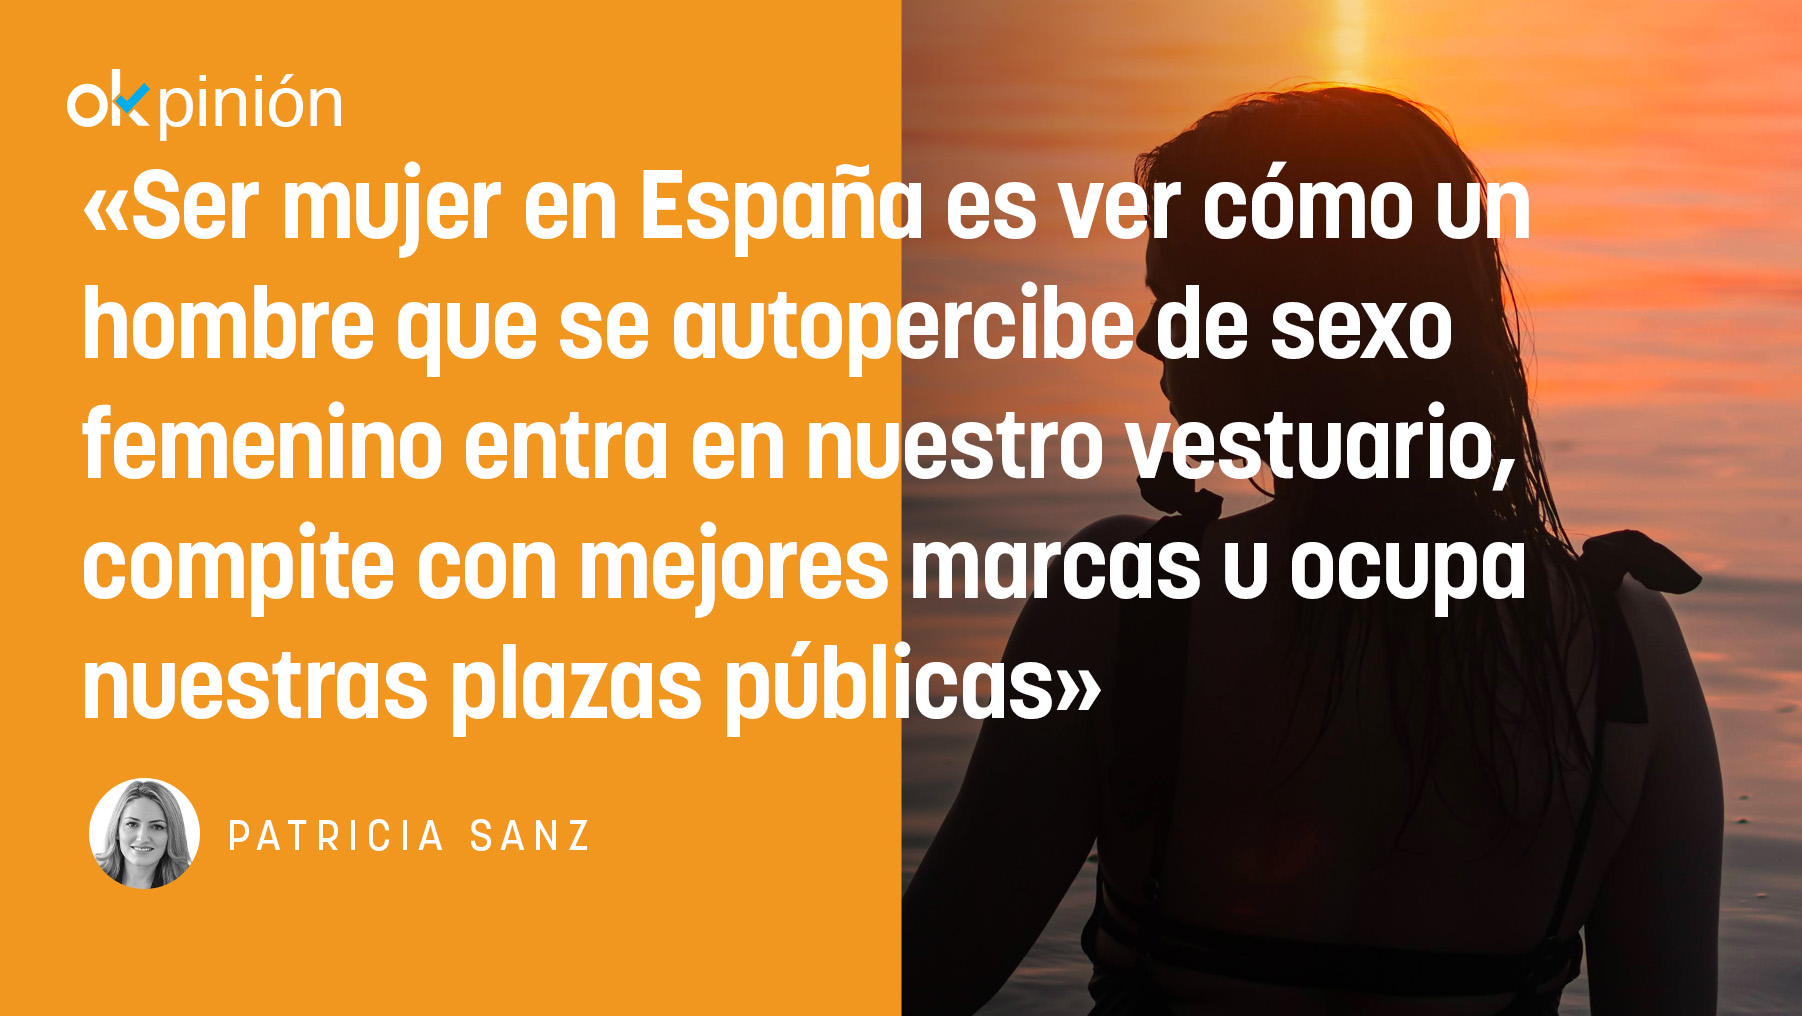 La polémica de definir «qué es ser mujer» surgió de la pregunta lanzada por Santiago Abascal a Yolanda Díaz en el debate de candidatos.